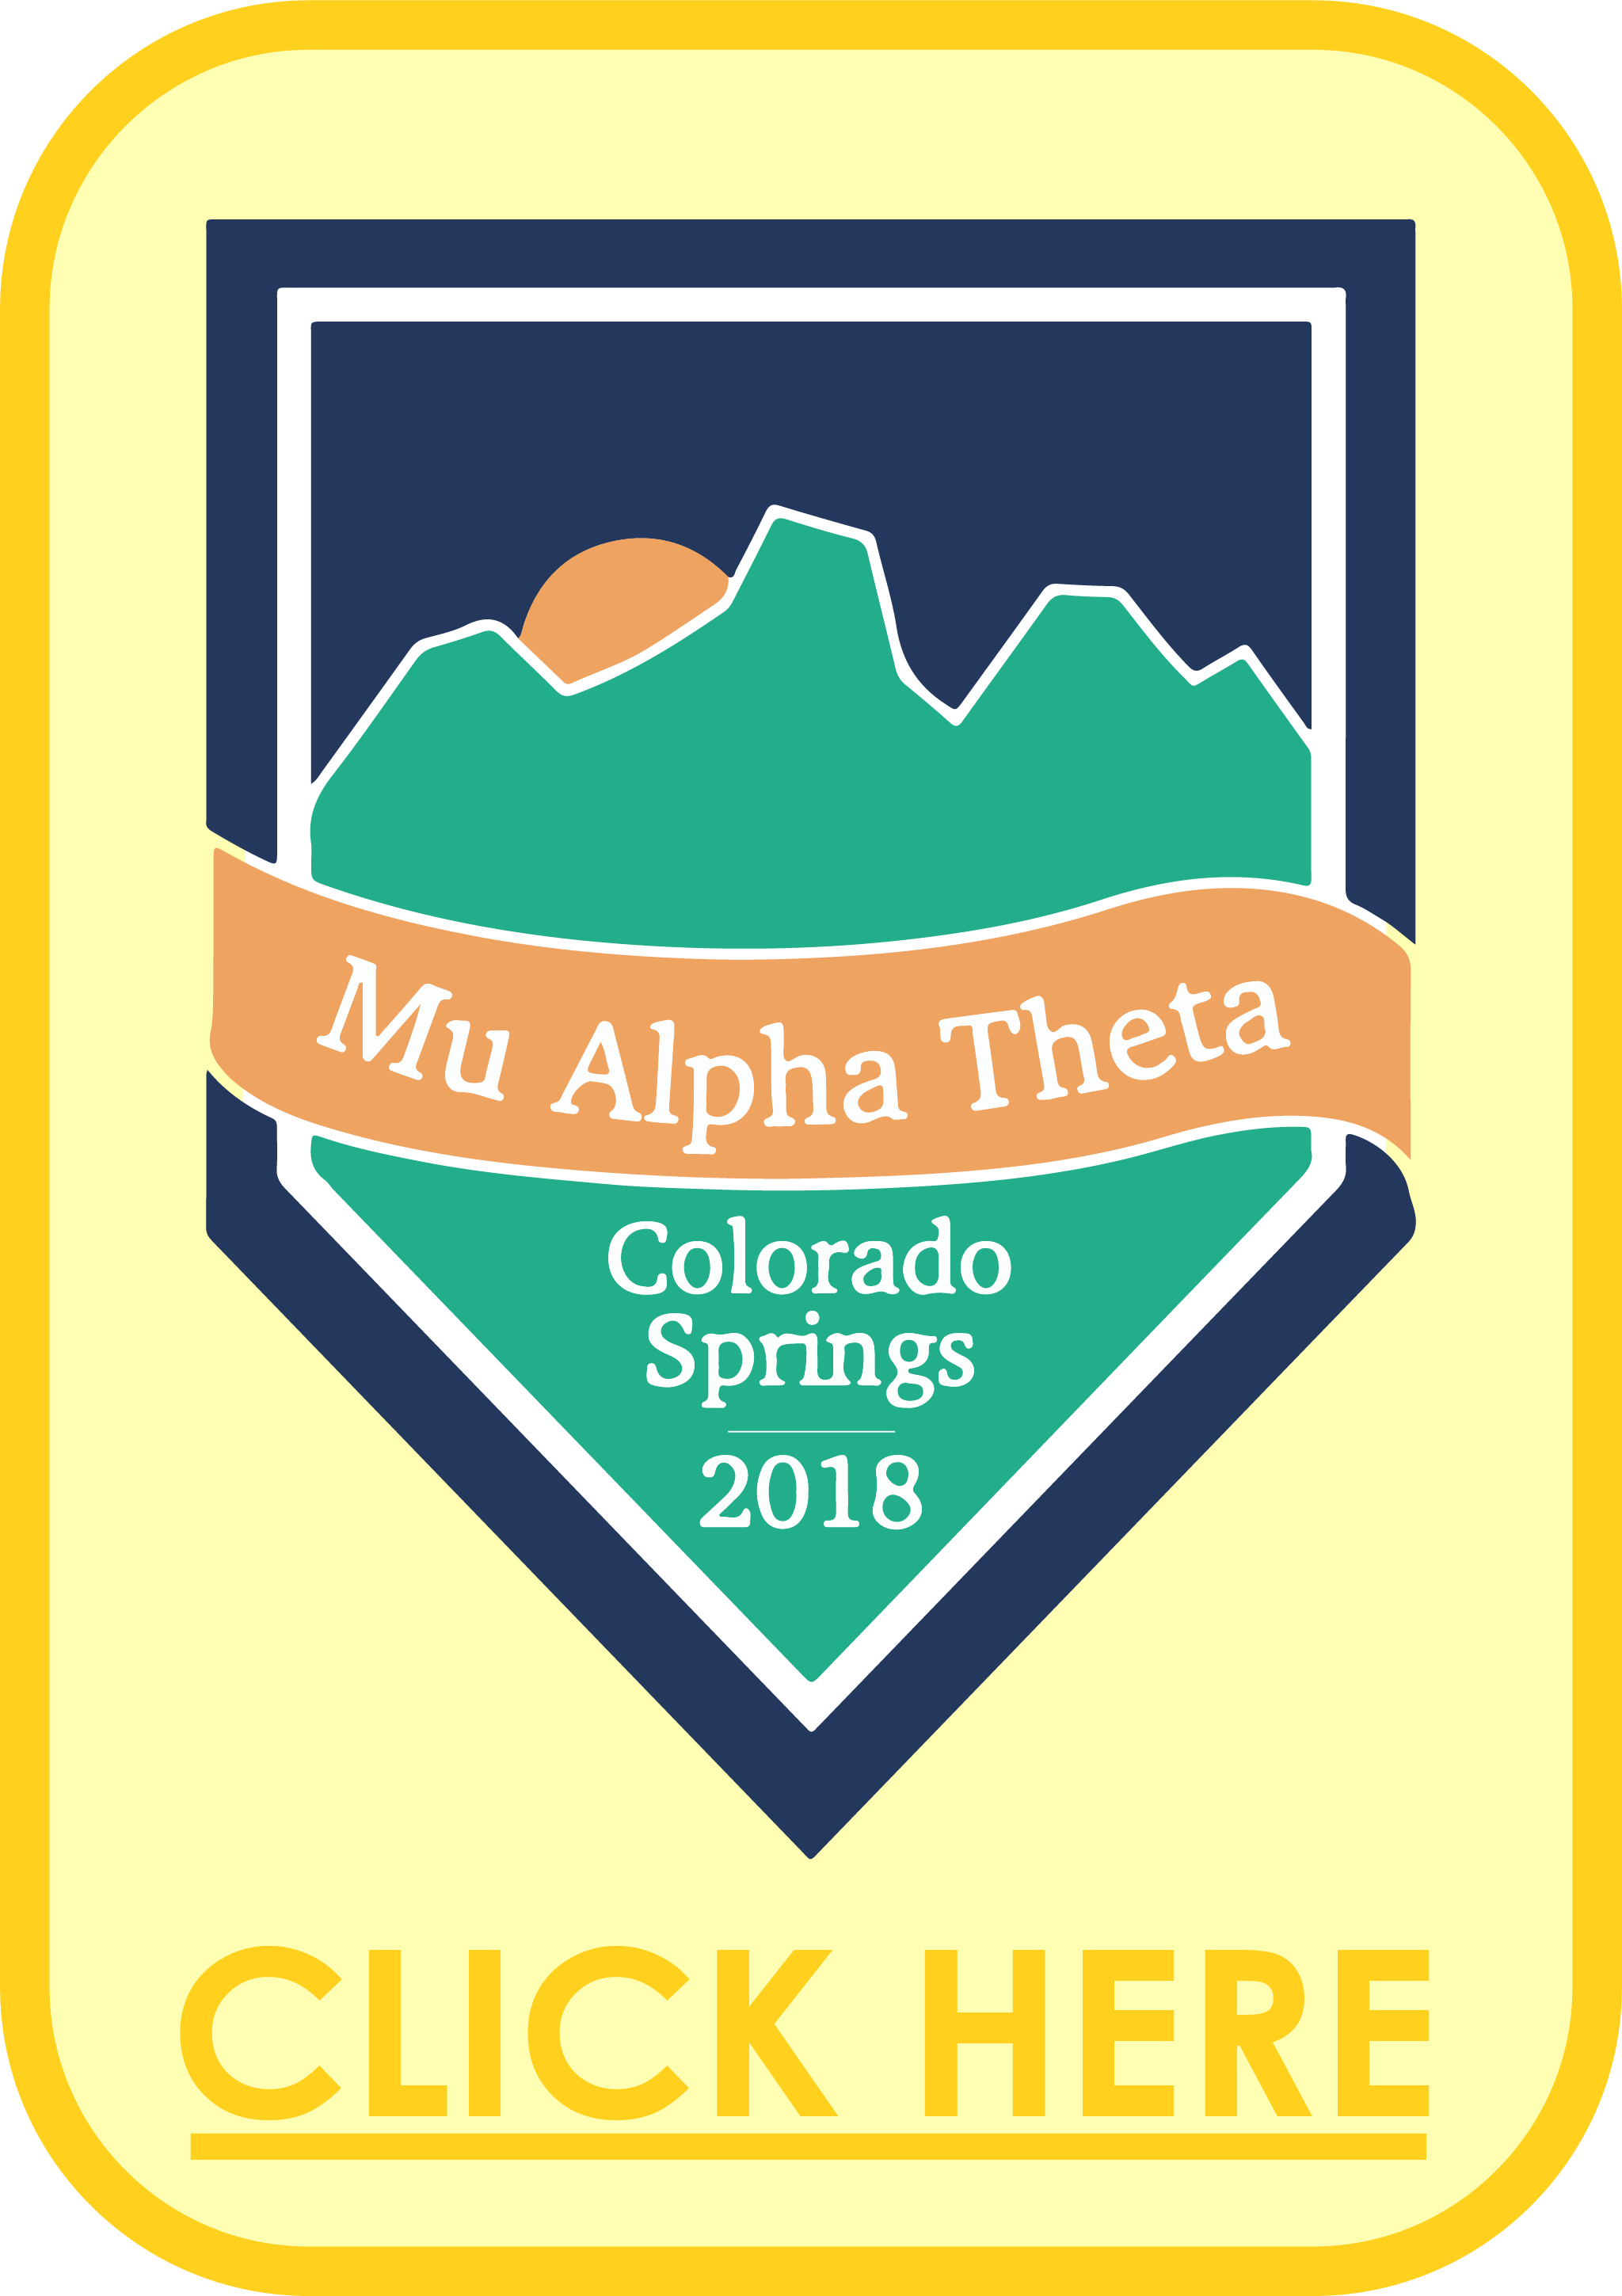 Colorado Springs, CO - 2018 Logo